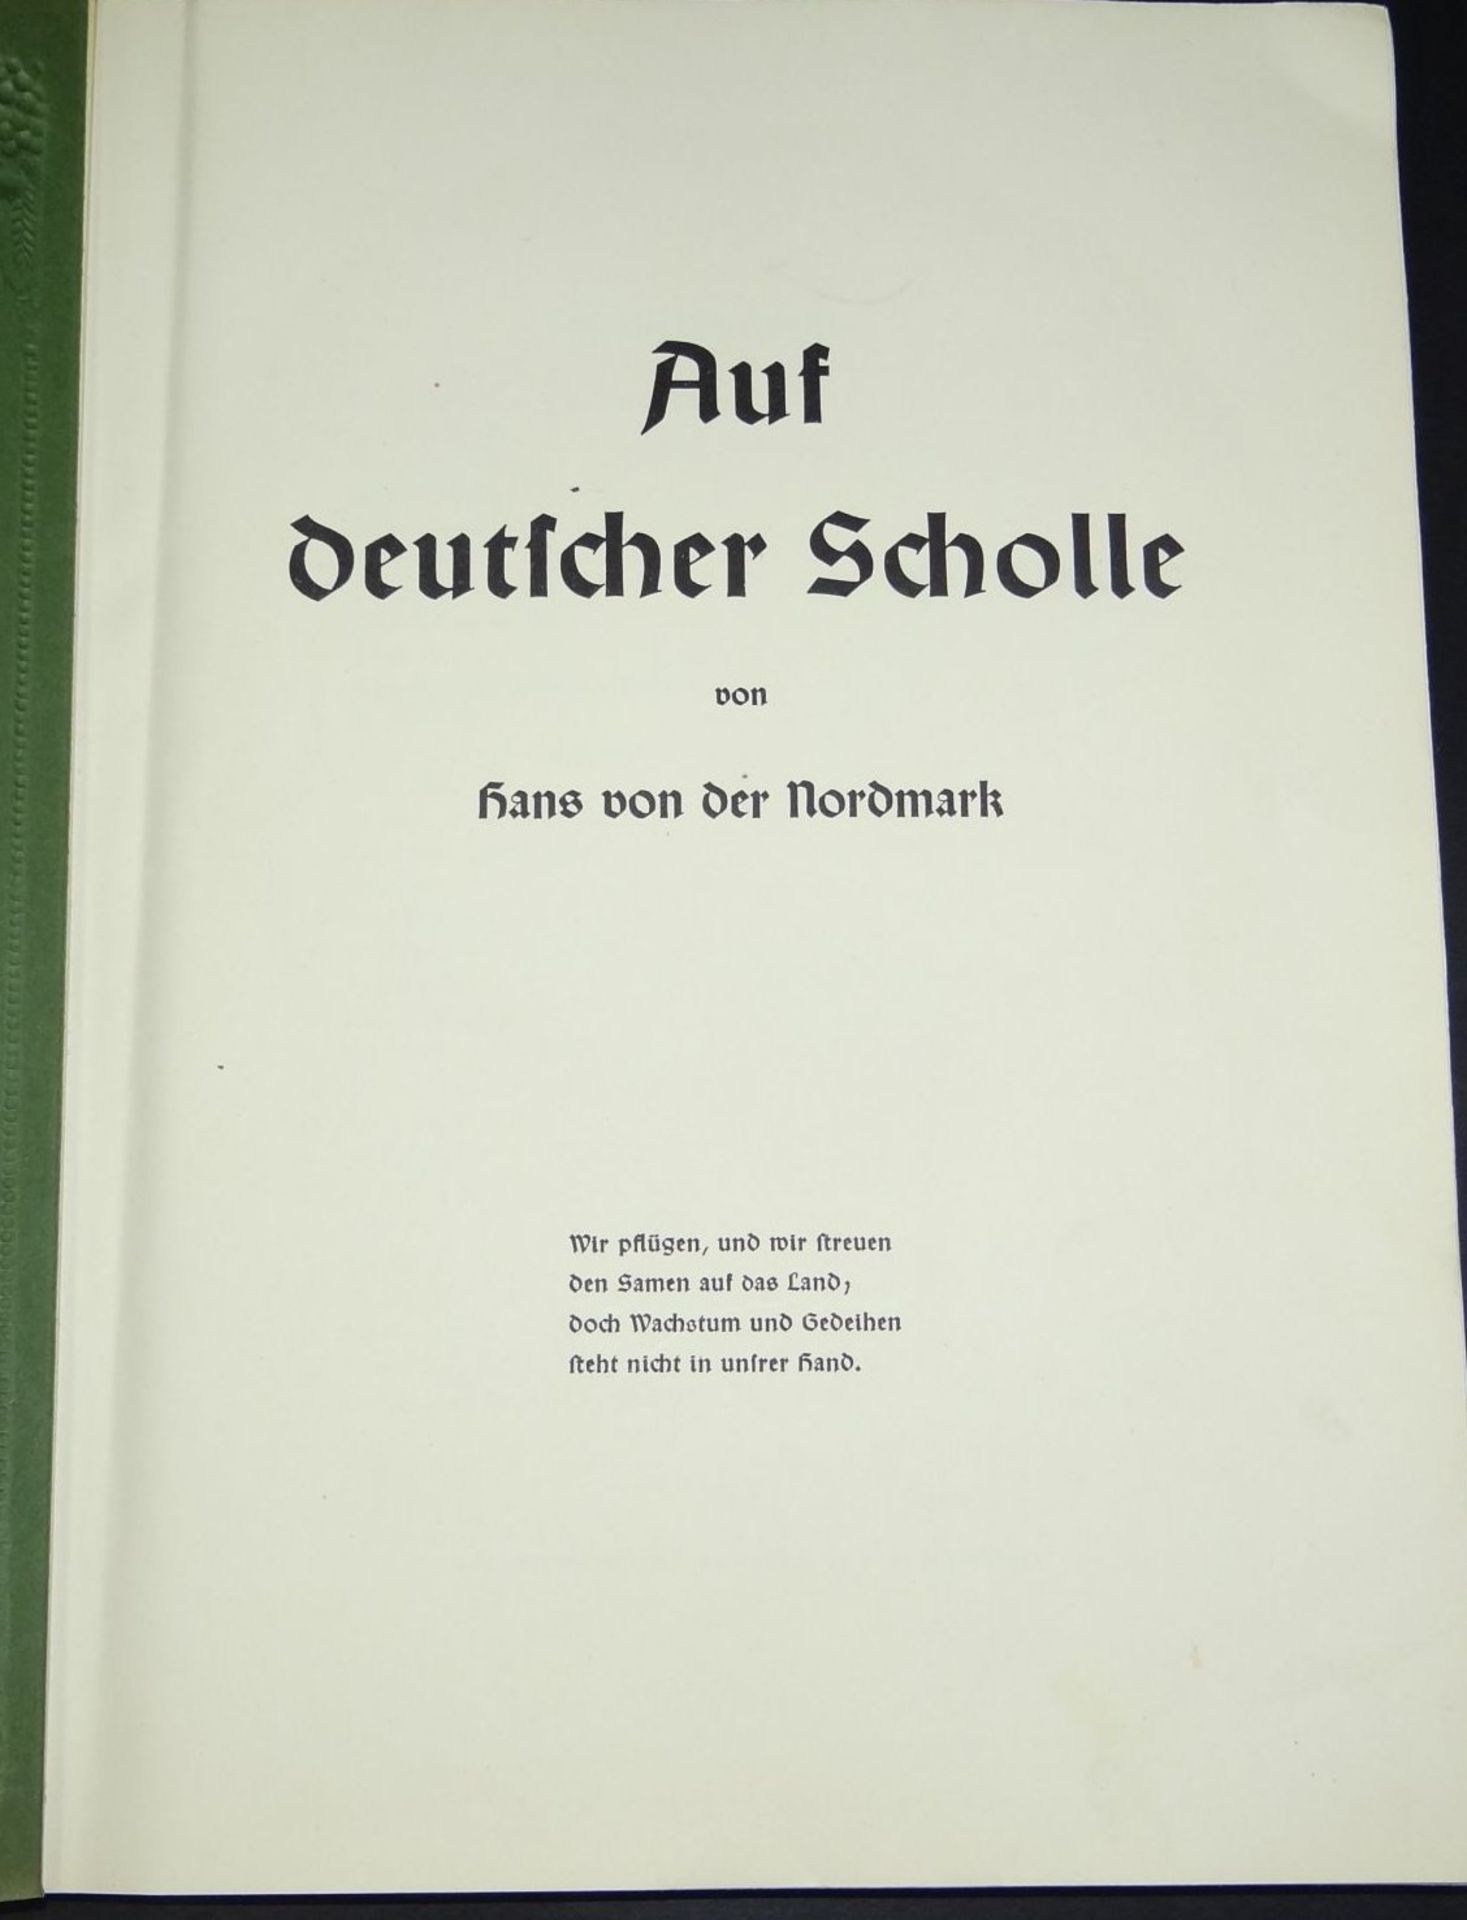 Sammelalbum "Auf deutscher Scholle" 1935, Hans von der Nordmark, komplett - Bild 2 aus 7